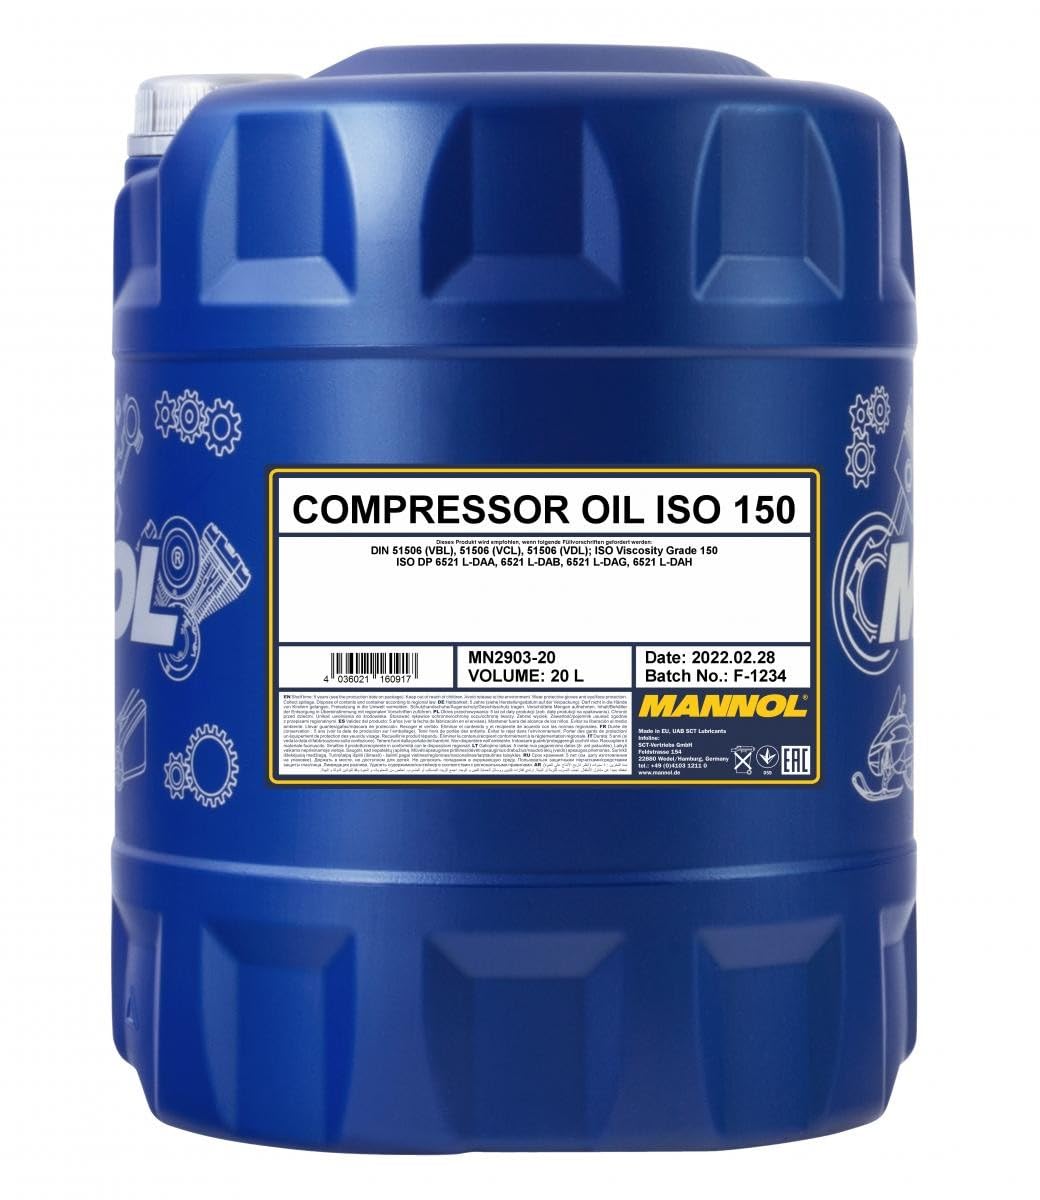 MANNOL Compressor Oil ISO 150 20l Kanister von MANNOL